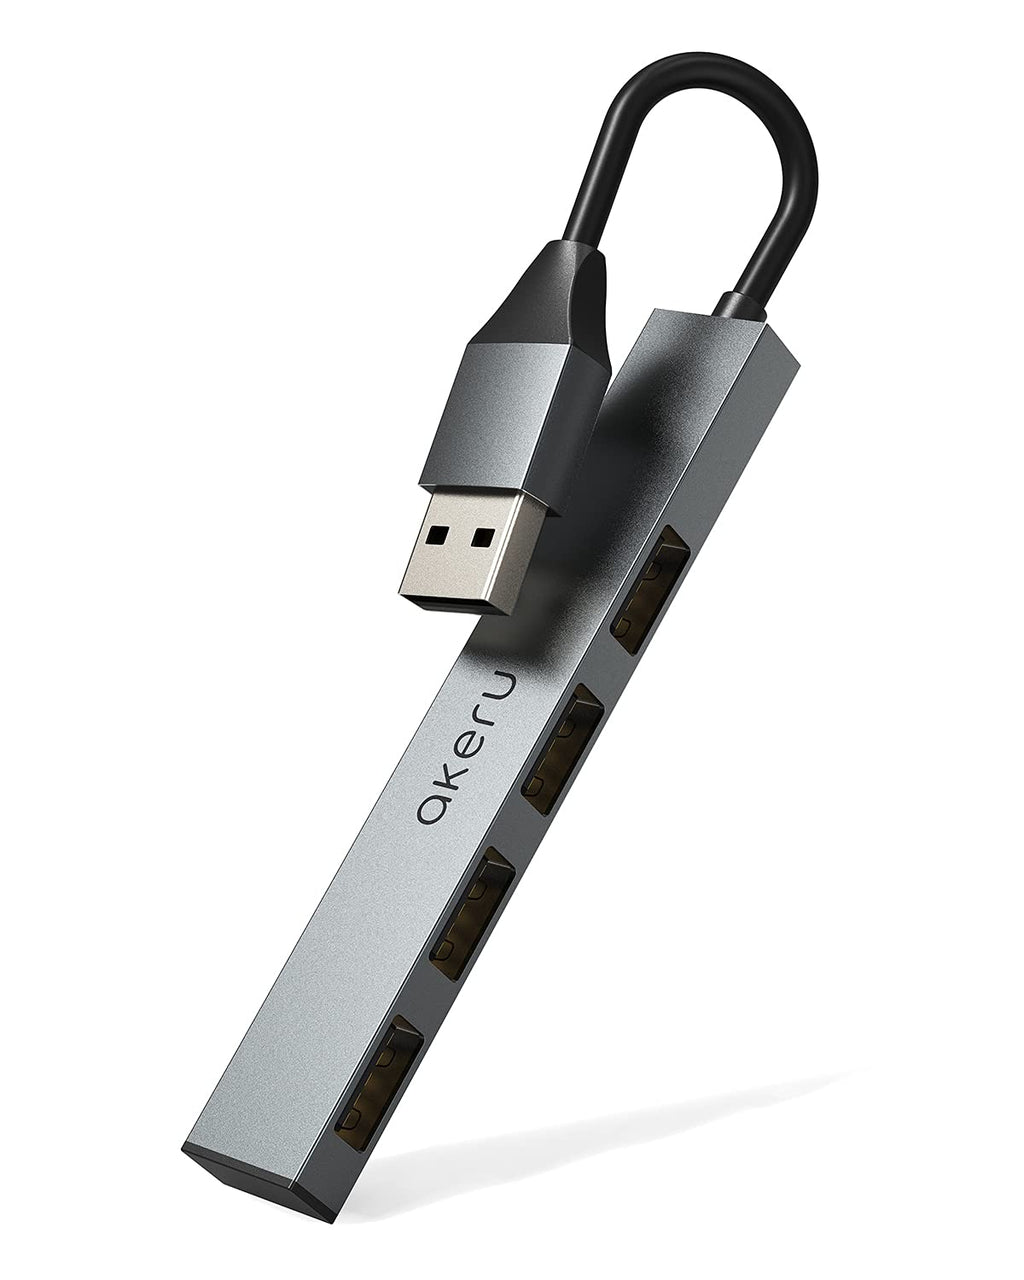 [Australia - AusPower] - 2.0 USB Splitter Space Gray Aluminum 4-Ports USB Hub (0.9 oz) Ultra Slim USB Extension, Multiport Adapter for PS4, Mac, PC, Tablet, DJI, Tesla, AKERU [EAA-41] USB A 